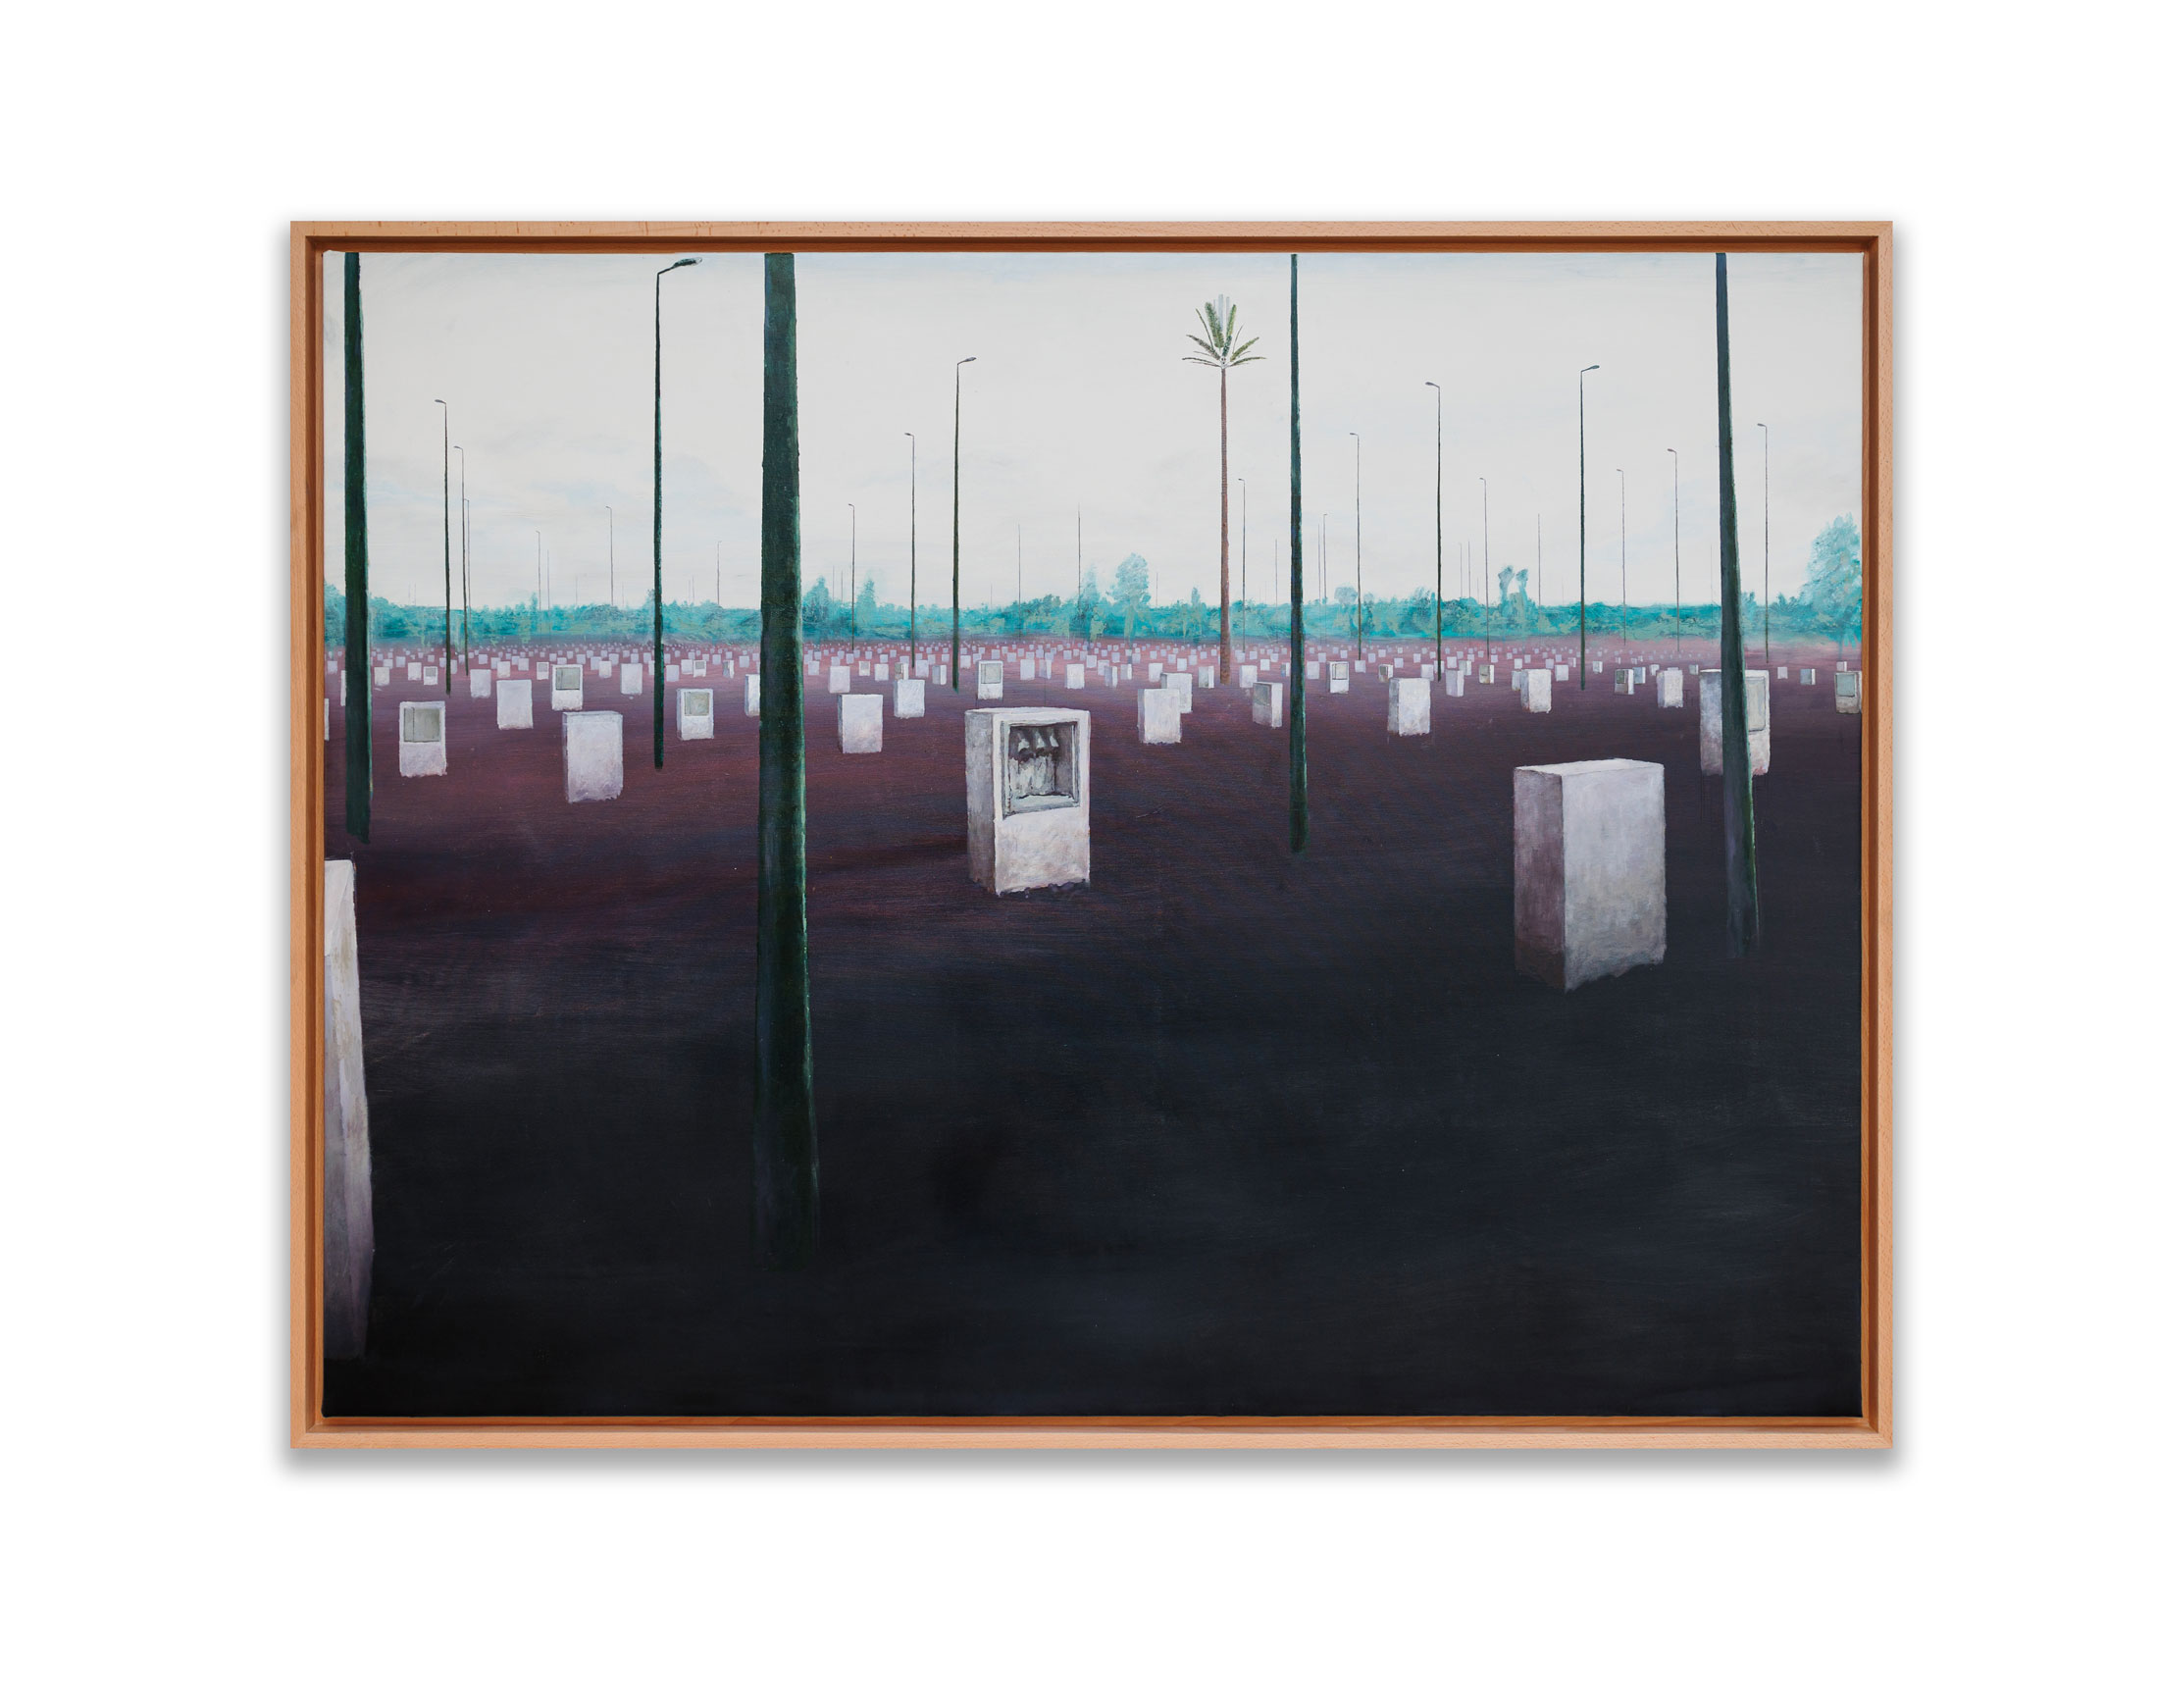 Cement cemetery, 2022.
Peinture à l’huile sur toile. Signée au dos.
150 x 200 cm.